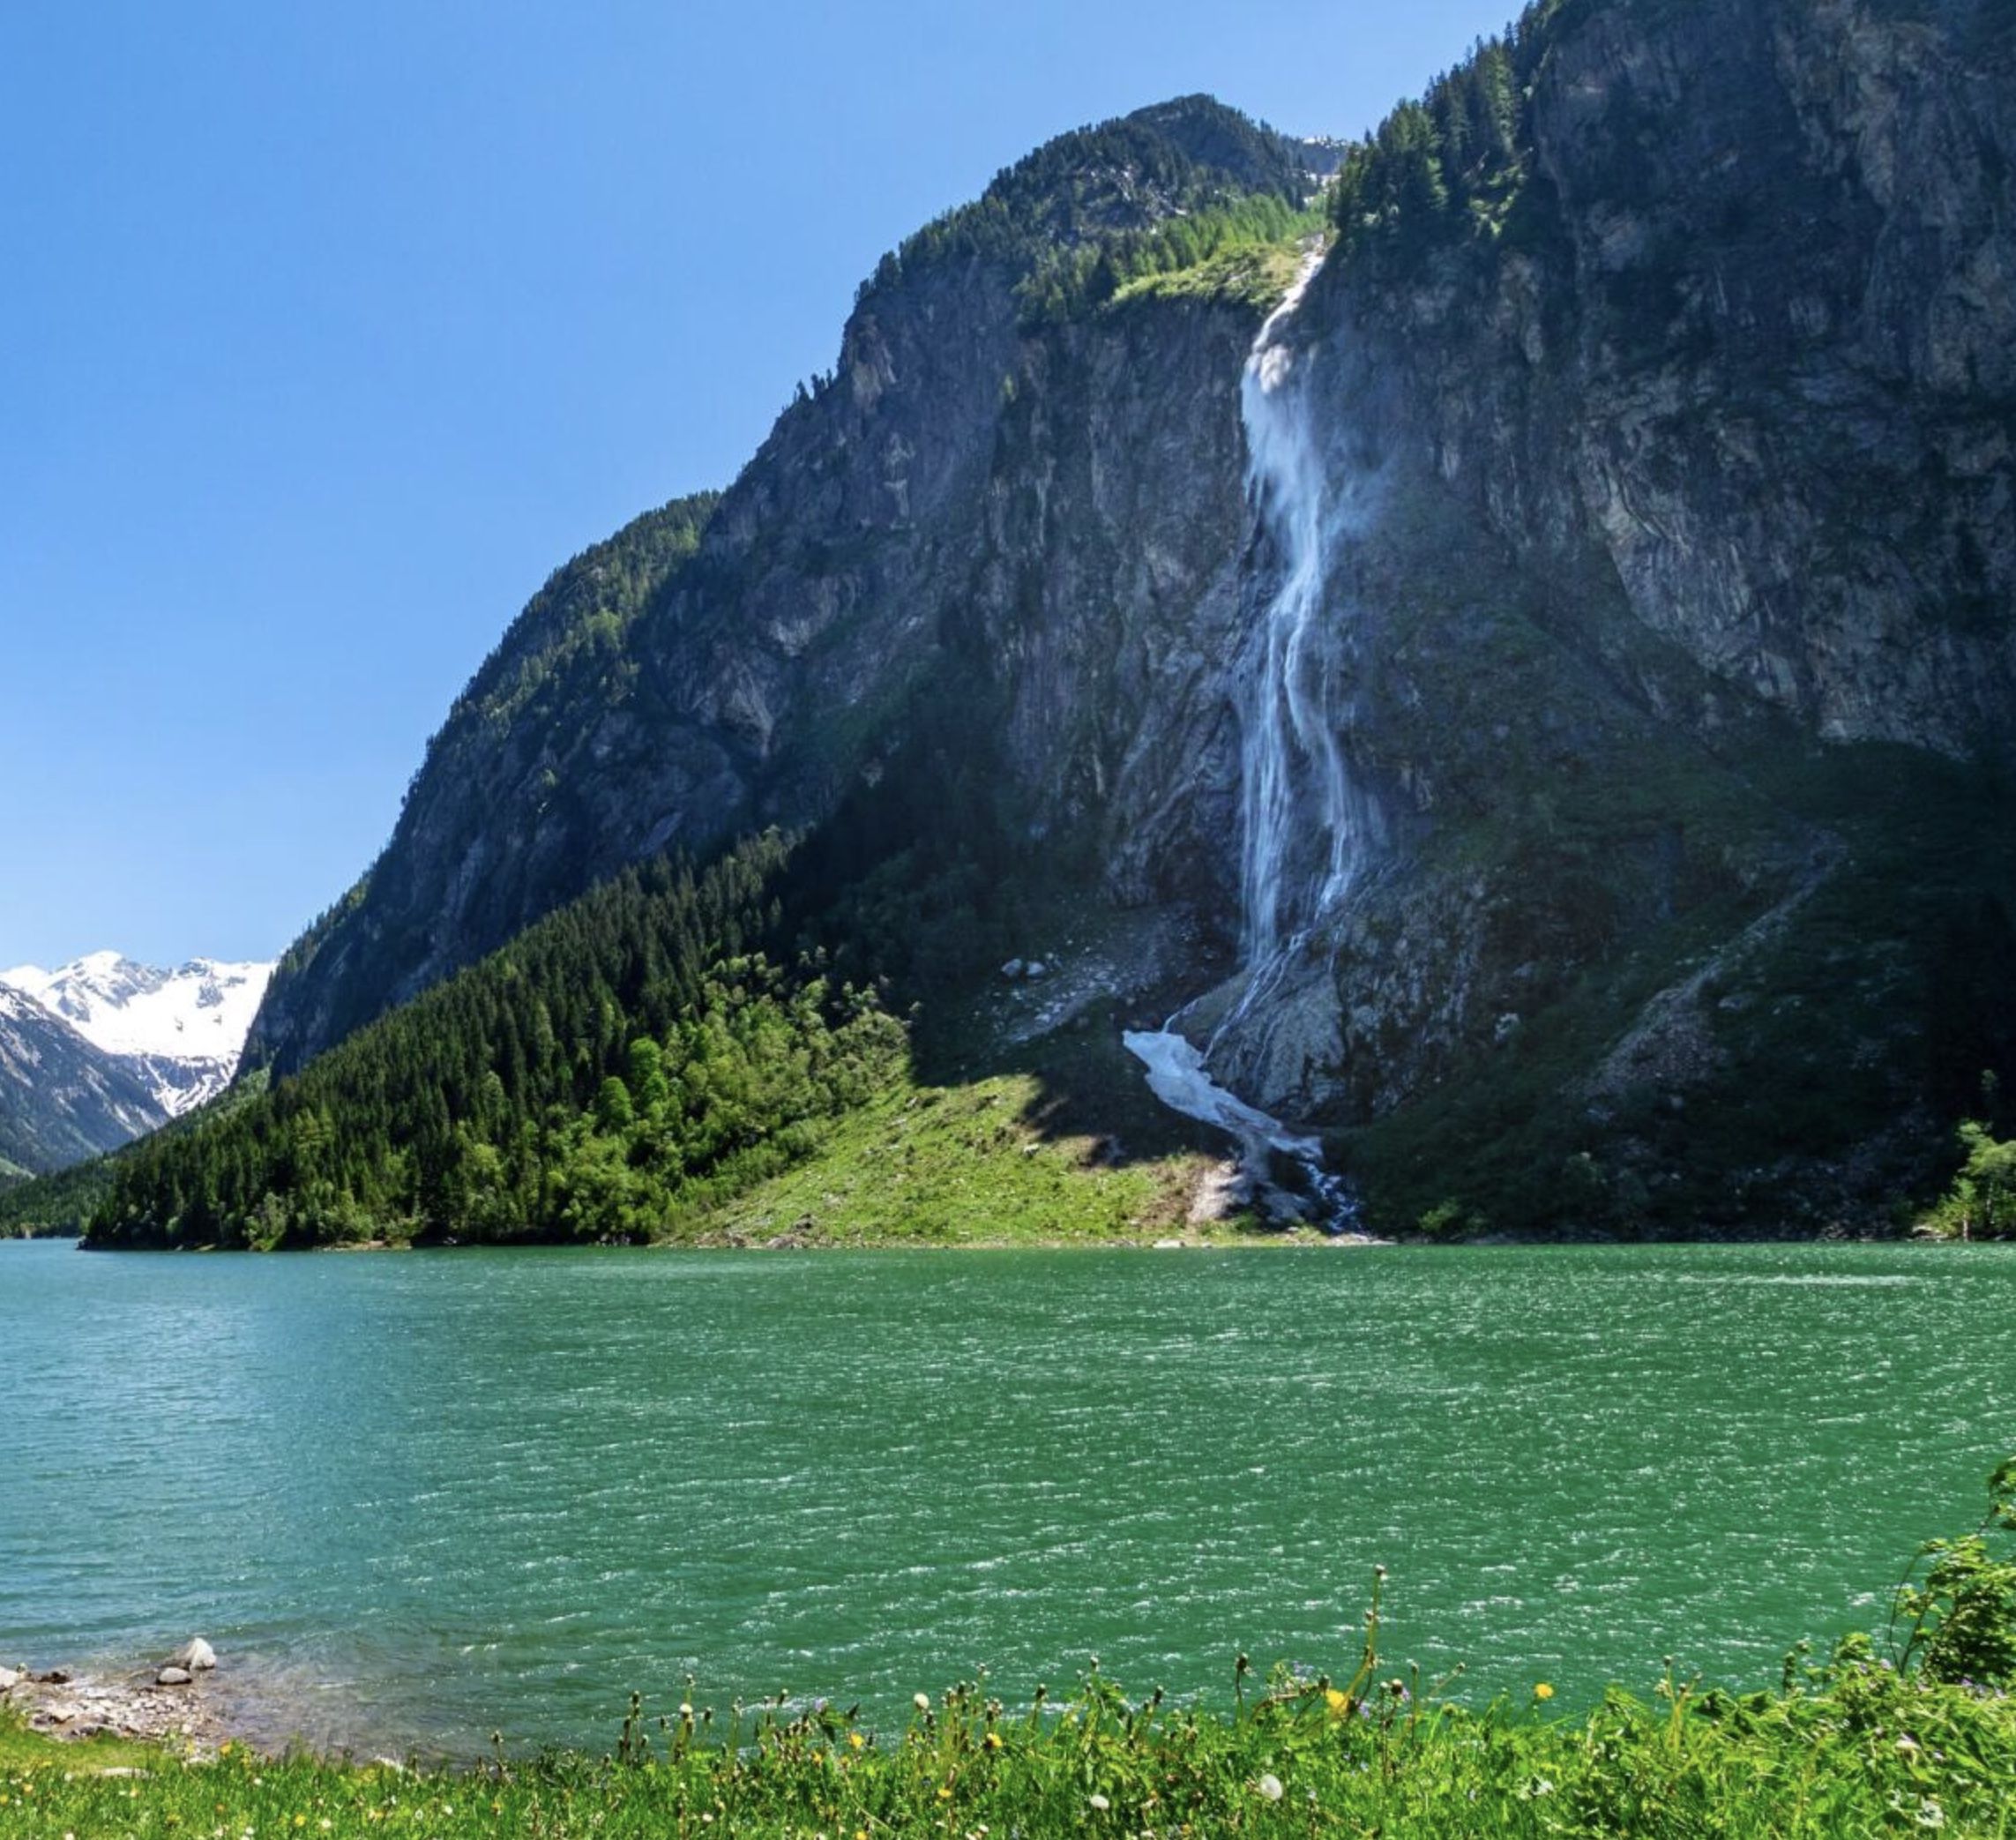 Krimmler Wasserfälle: 2 ÜN im Alpengasthof Filzstein inkl. Halbpension + Zugang zu den Wasserfällen ab 94€ p.P.